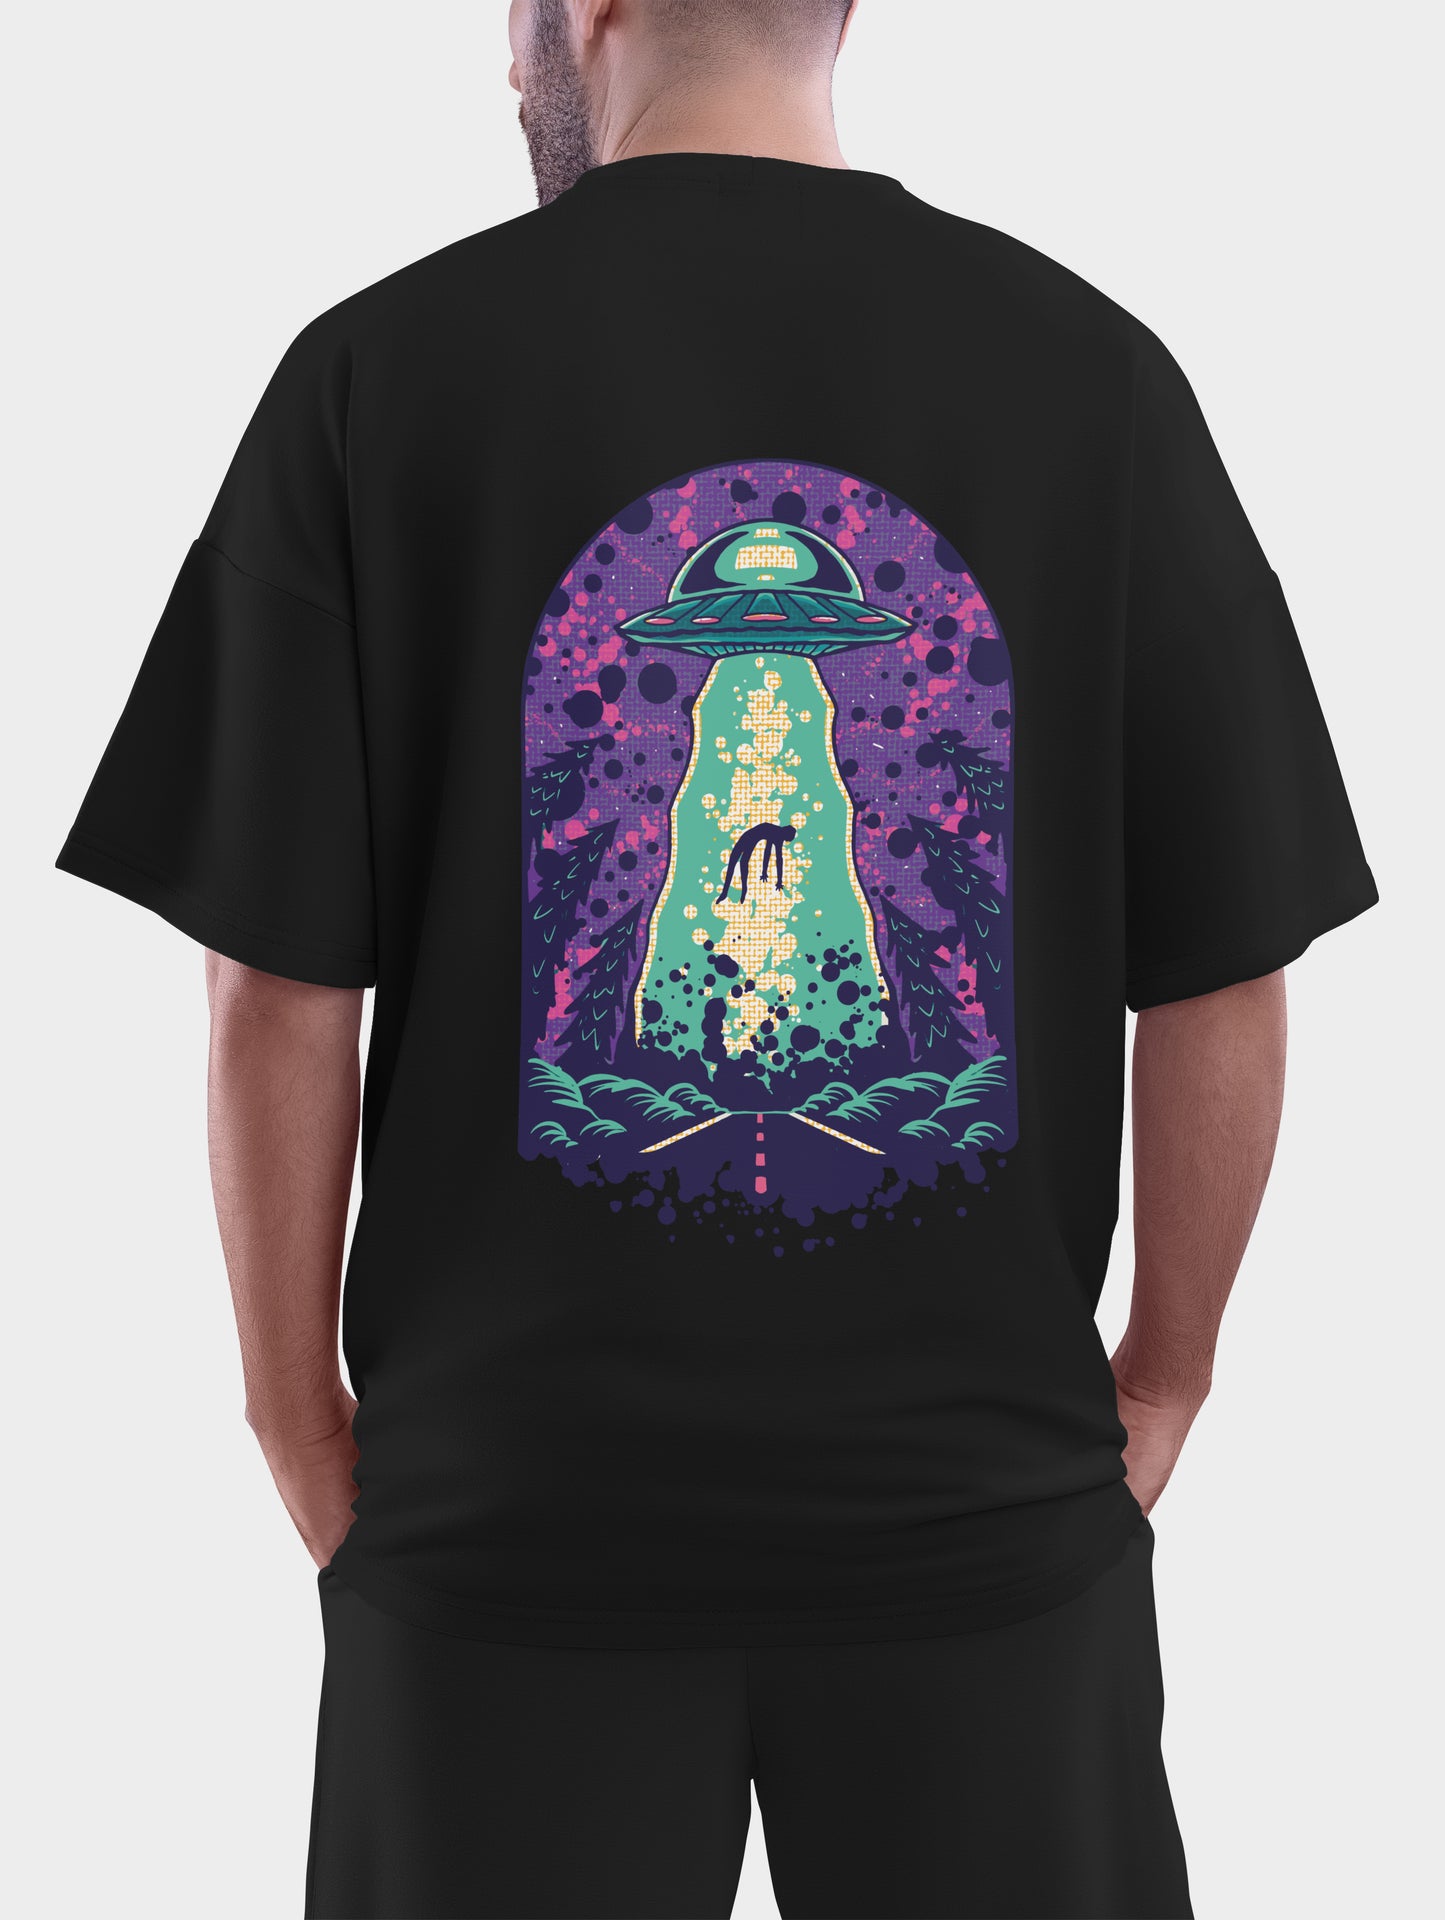 Alien Abduction Oversized T shirt